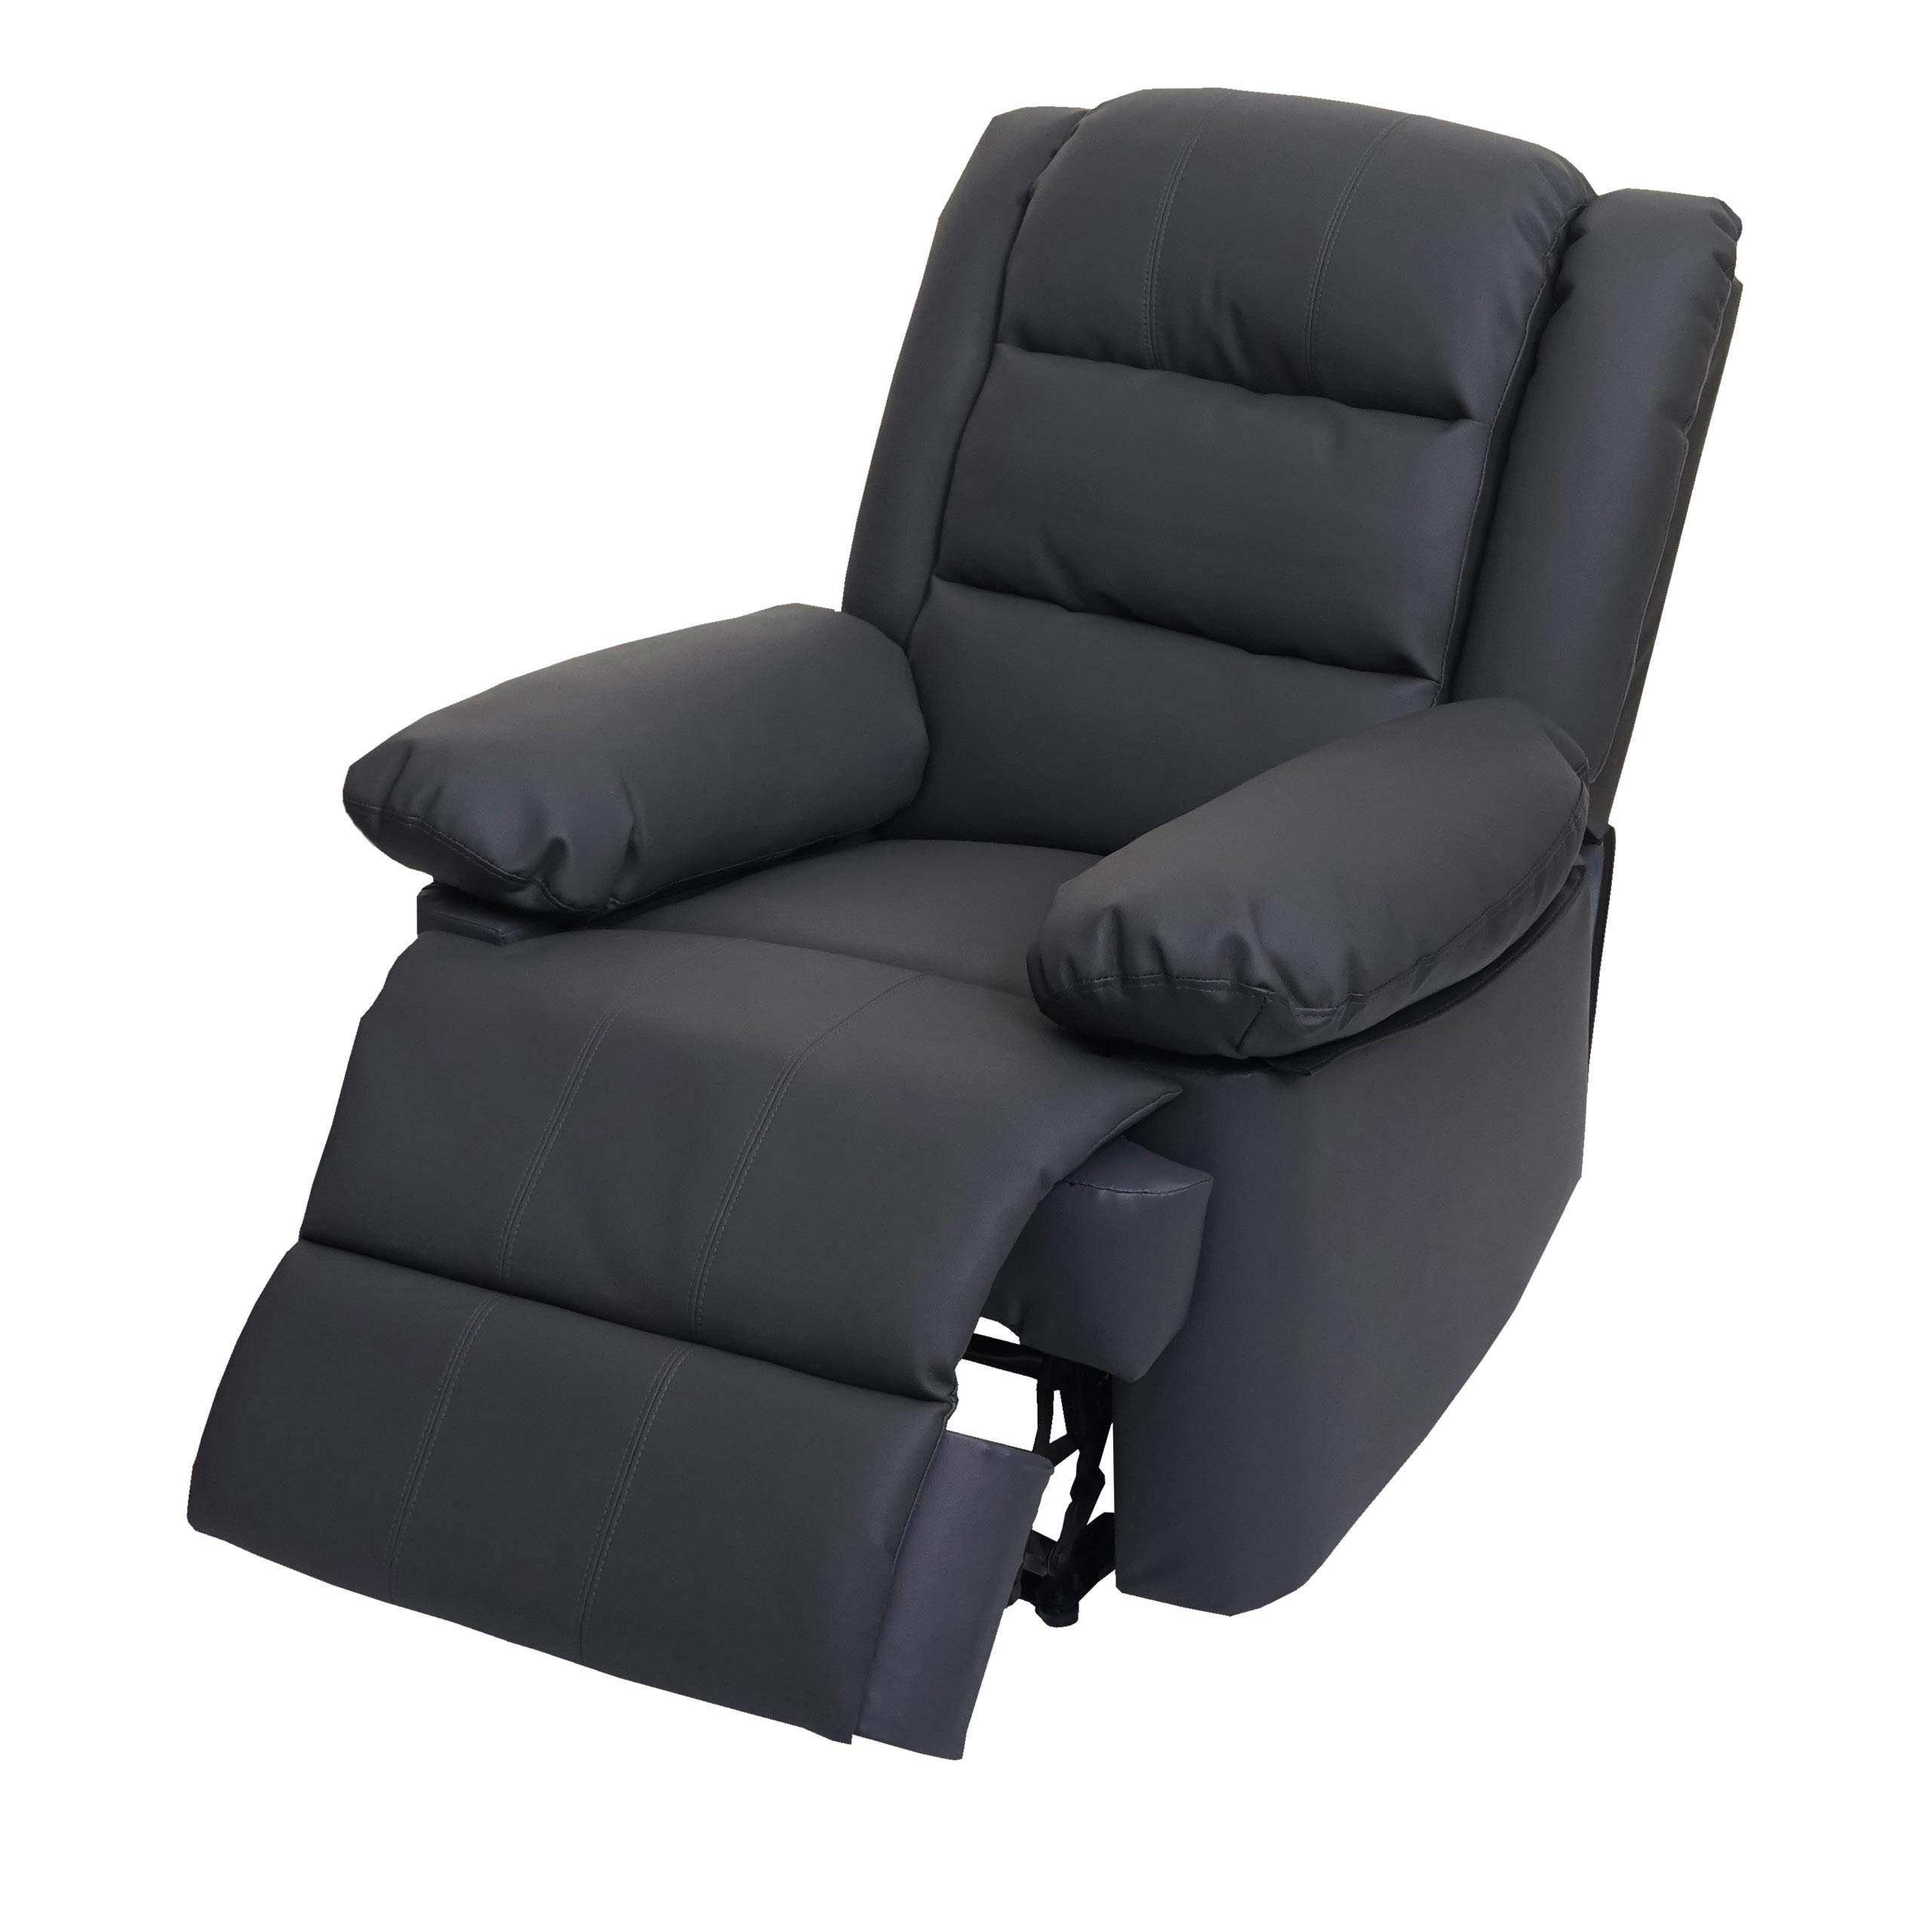 MCW Liegefläche: Fußstütze verstellbar, Rückenfläche, 165 cm, TV-Sessel MCW-G15, Verstellbare Liegefunktion grau